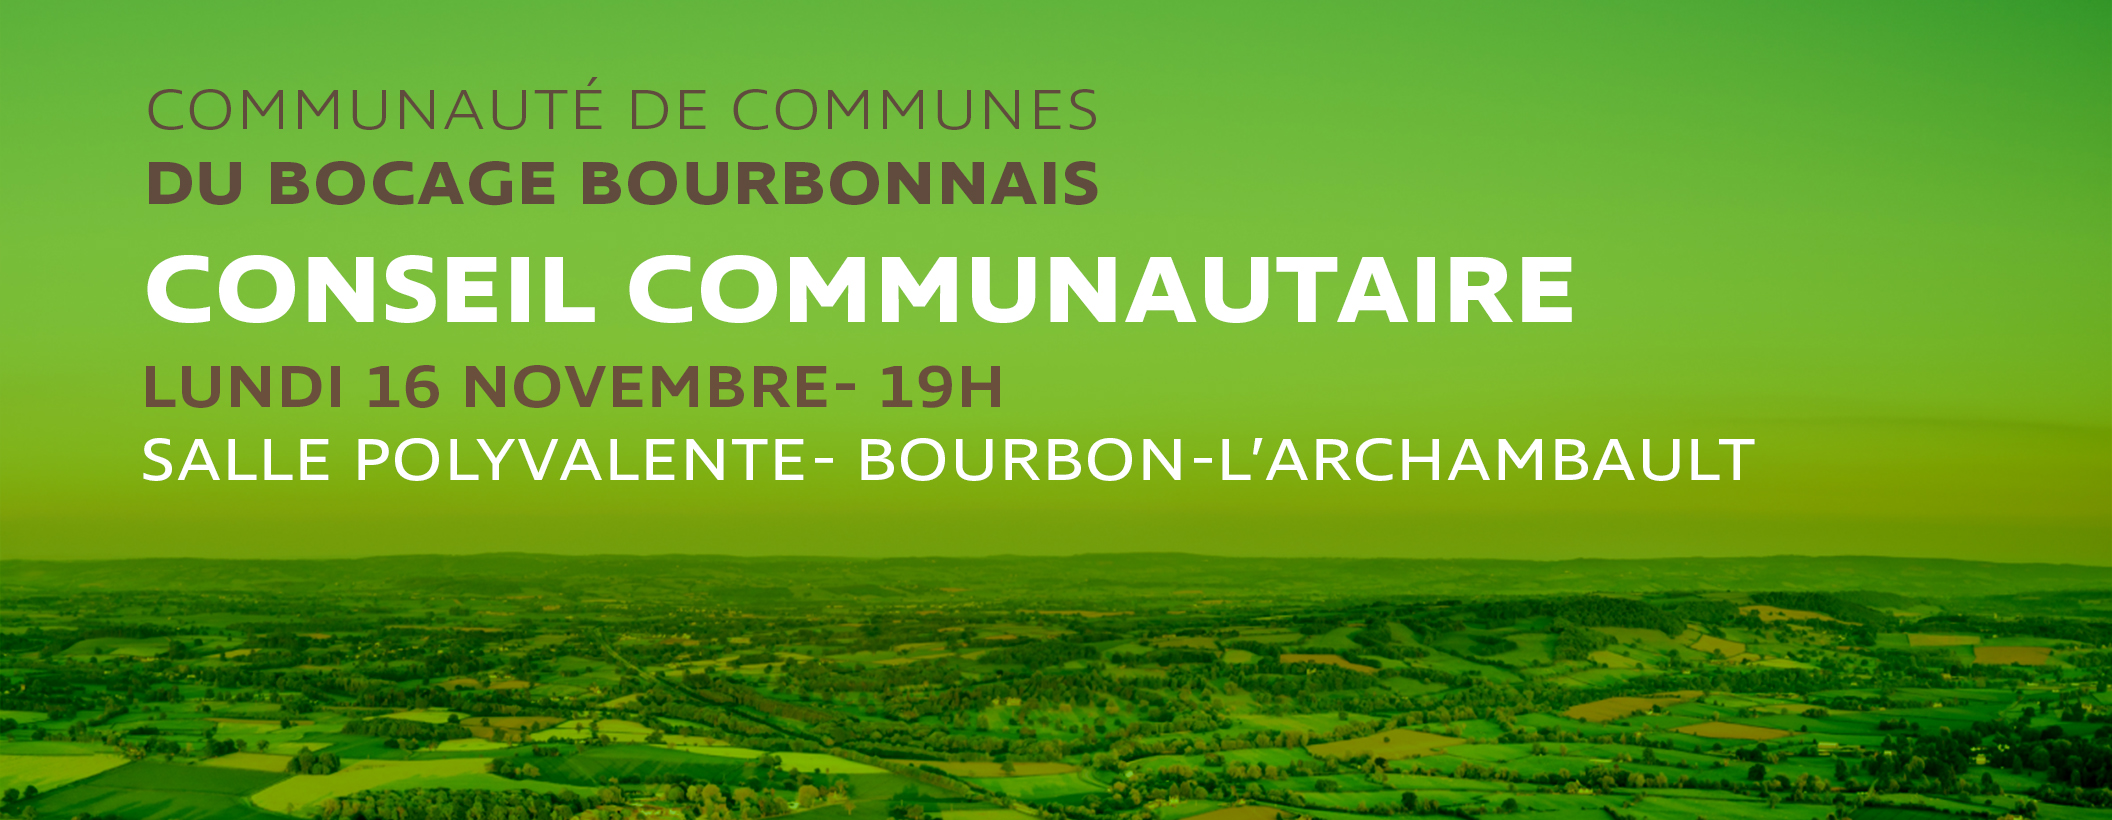 Prochain Conseil Communautaire : lundi 16 novembre à Bourbon-l'Archambault